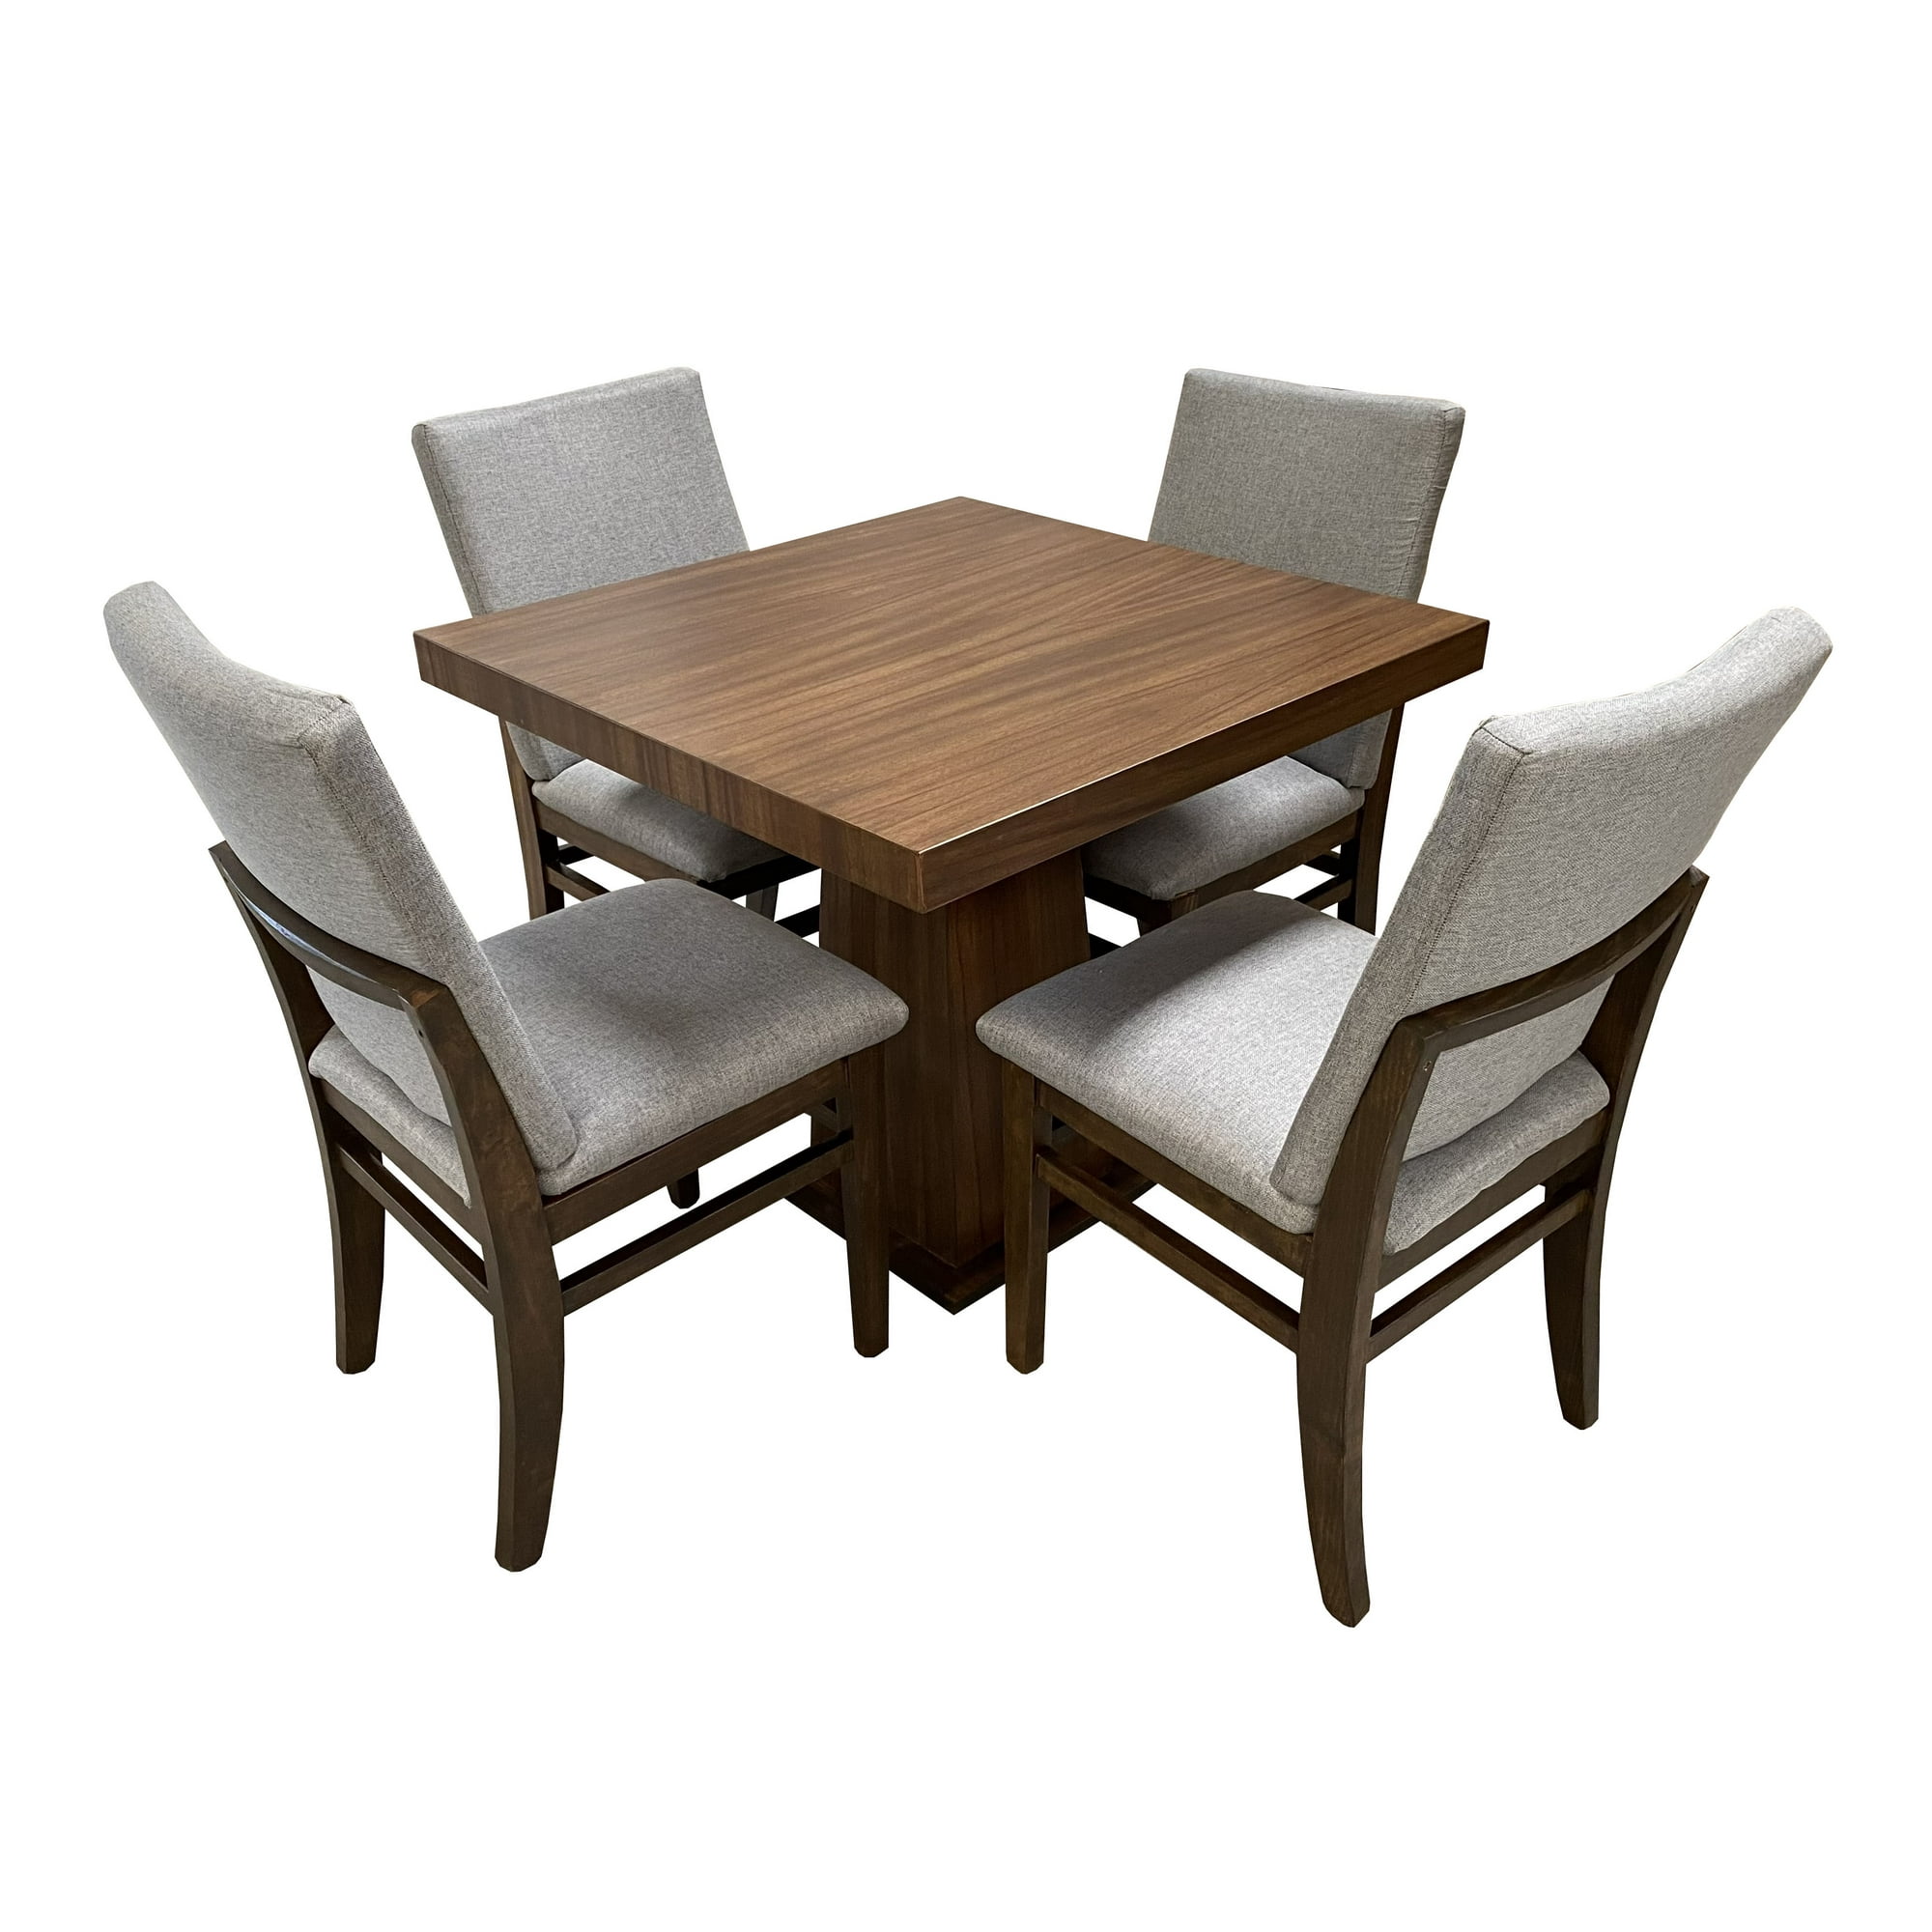 Set de comedor Vihti mesa MDF 120 x 70 cm efecto madera + 4 sillas grises